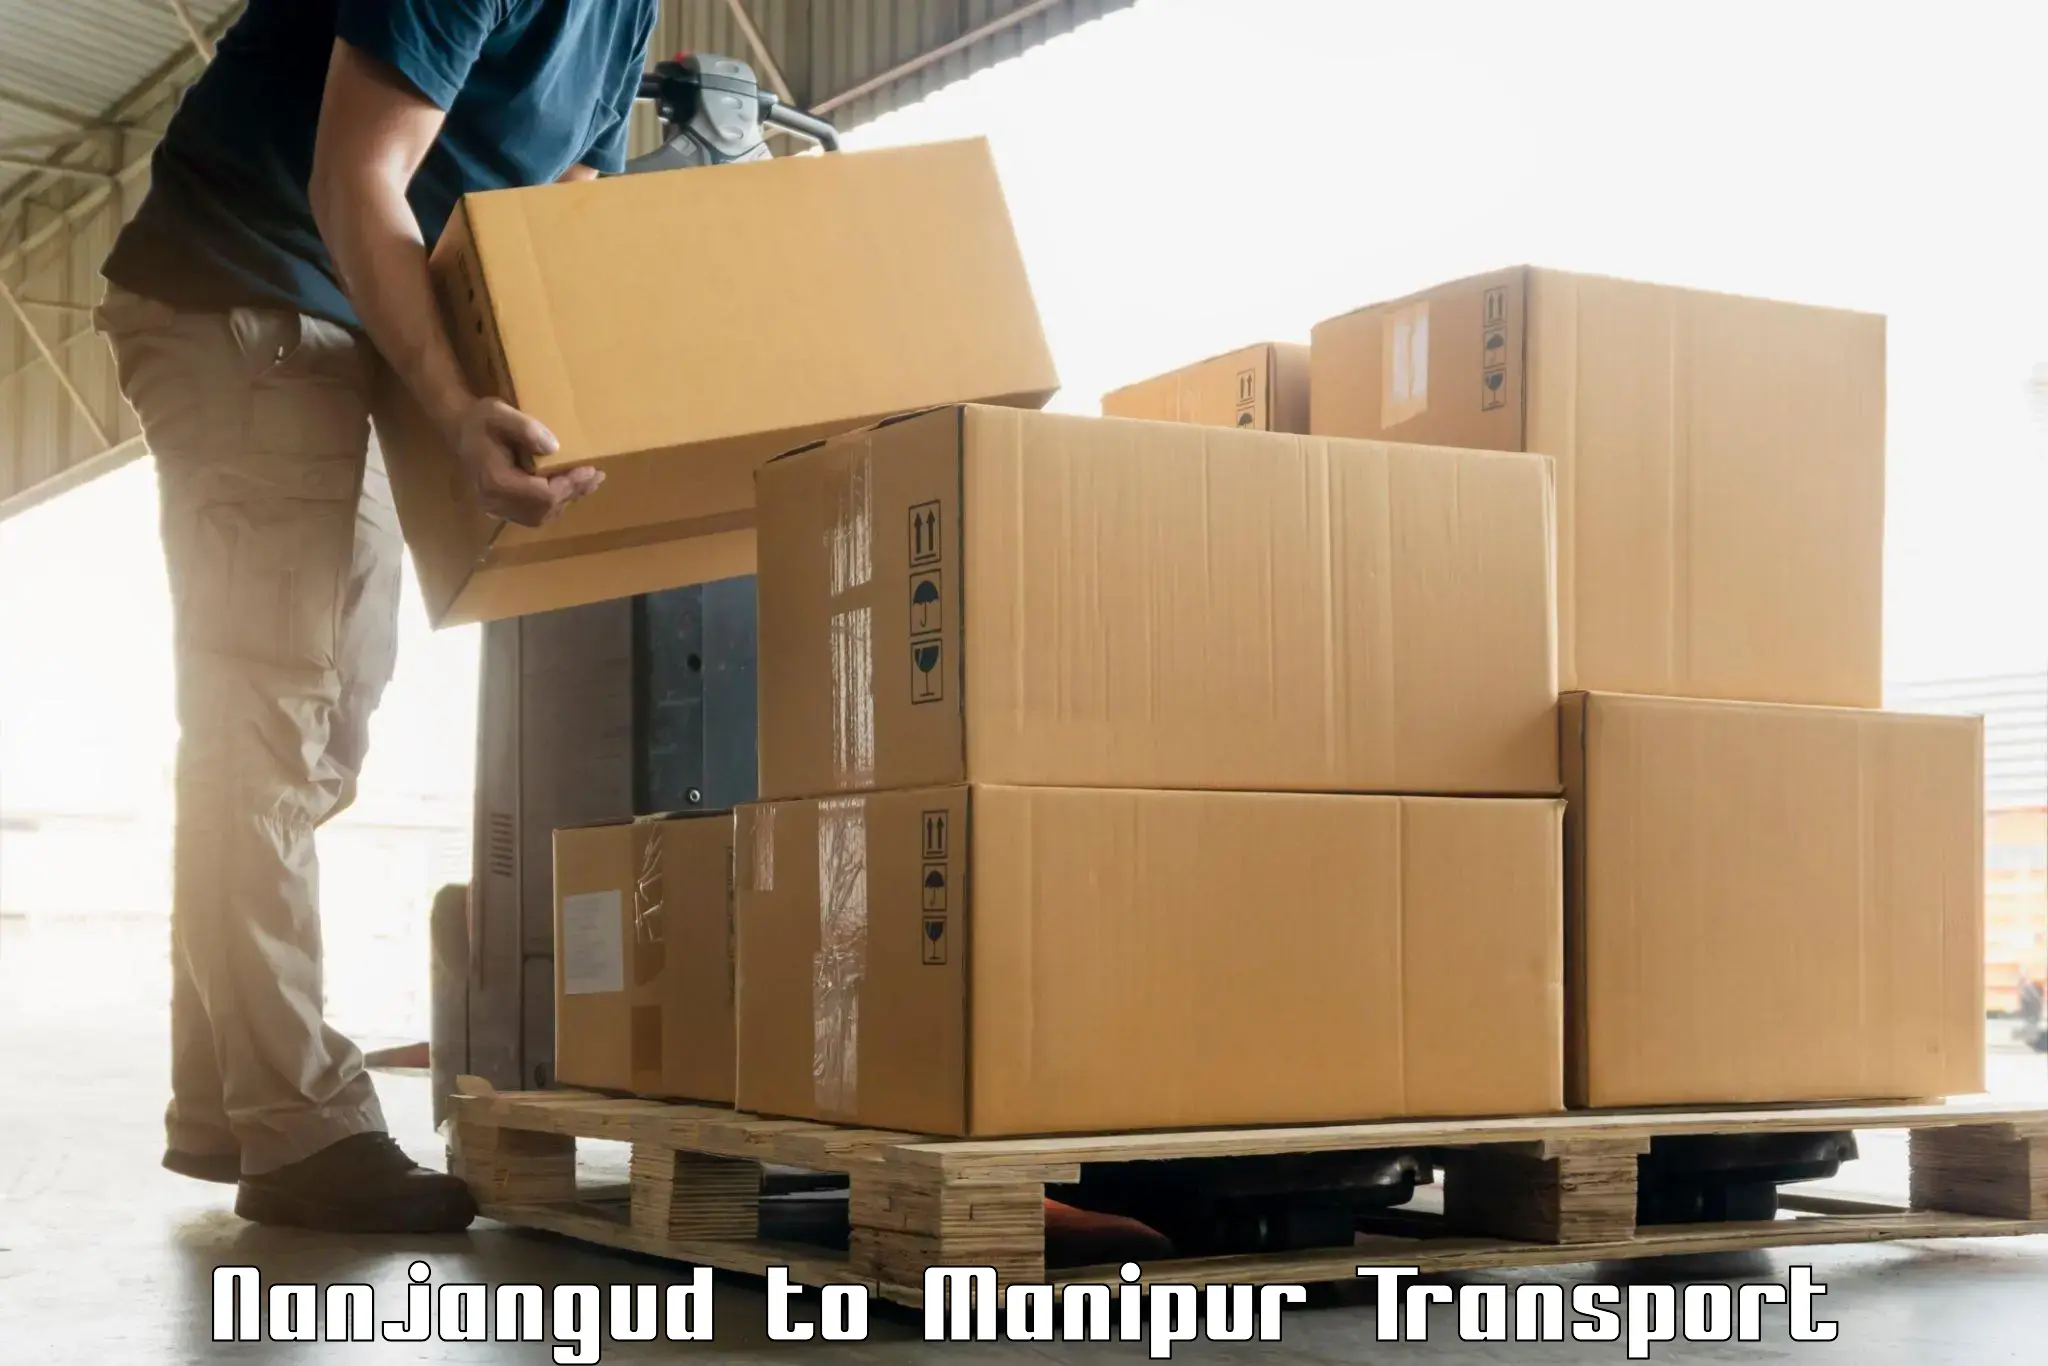 Transport services in Nanjangud to Churachandpur